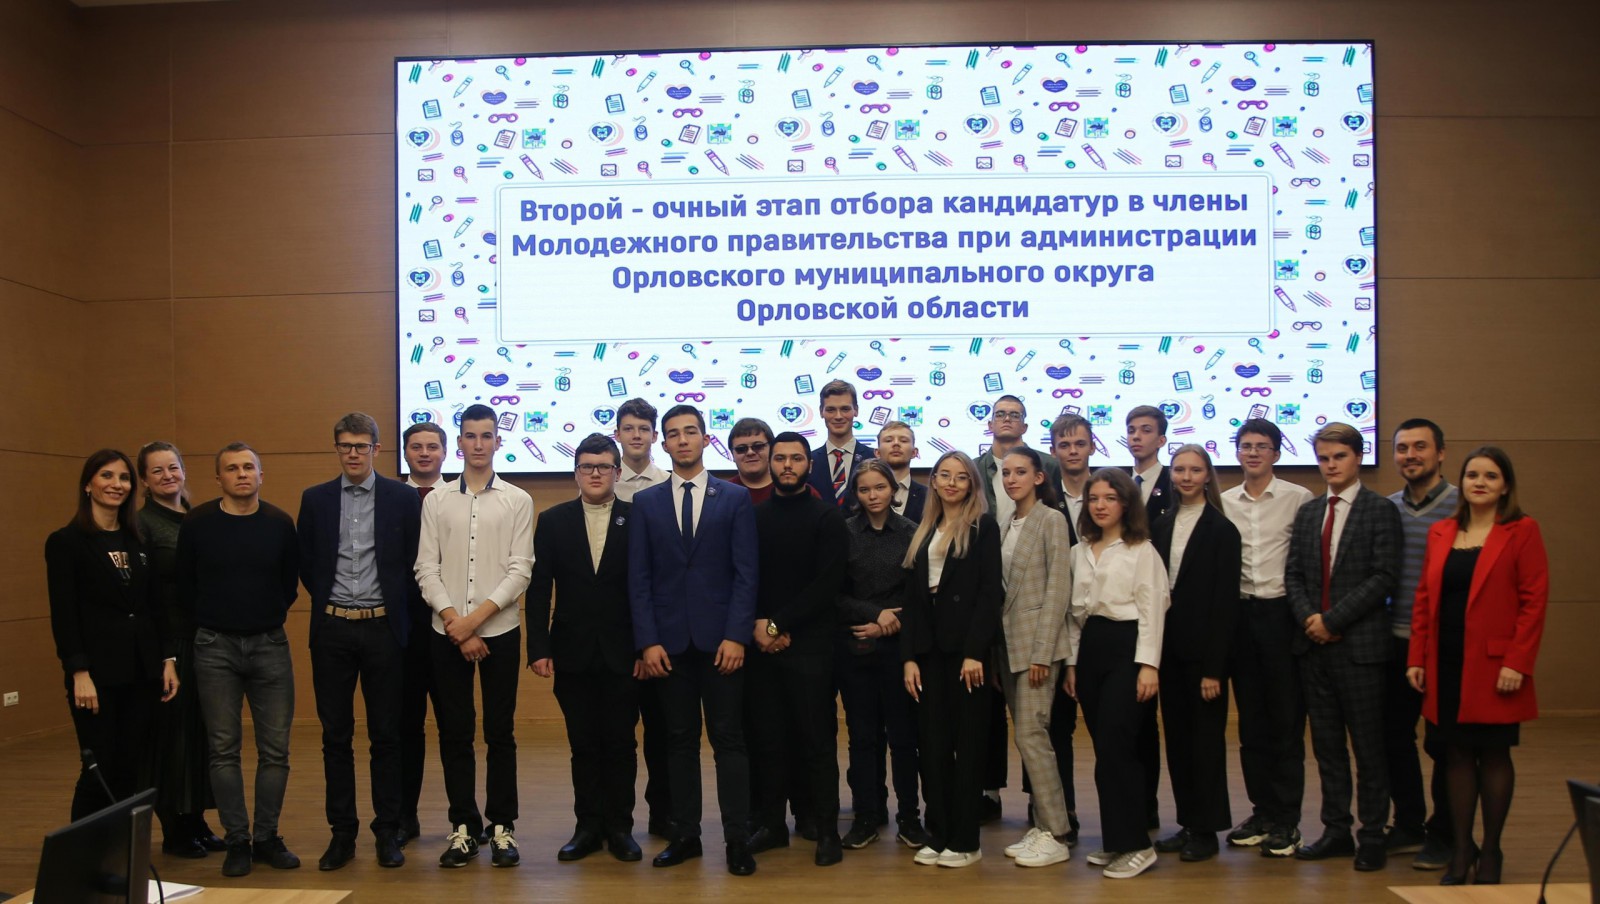 Отбор кандидатур в члены Молодежного правительства при администрации Орловского муниципального округа